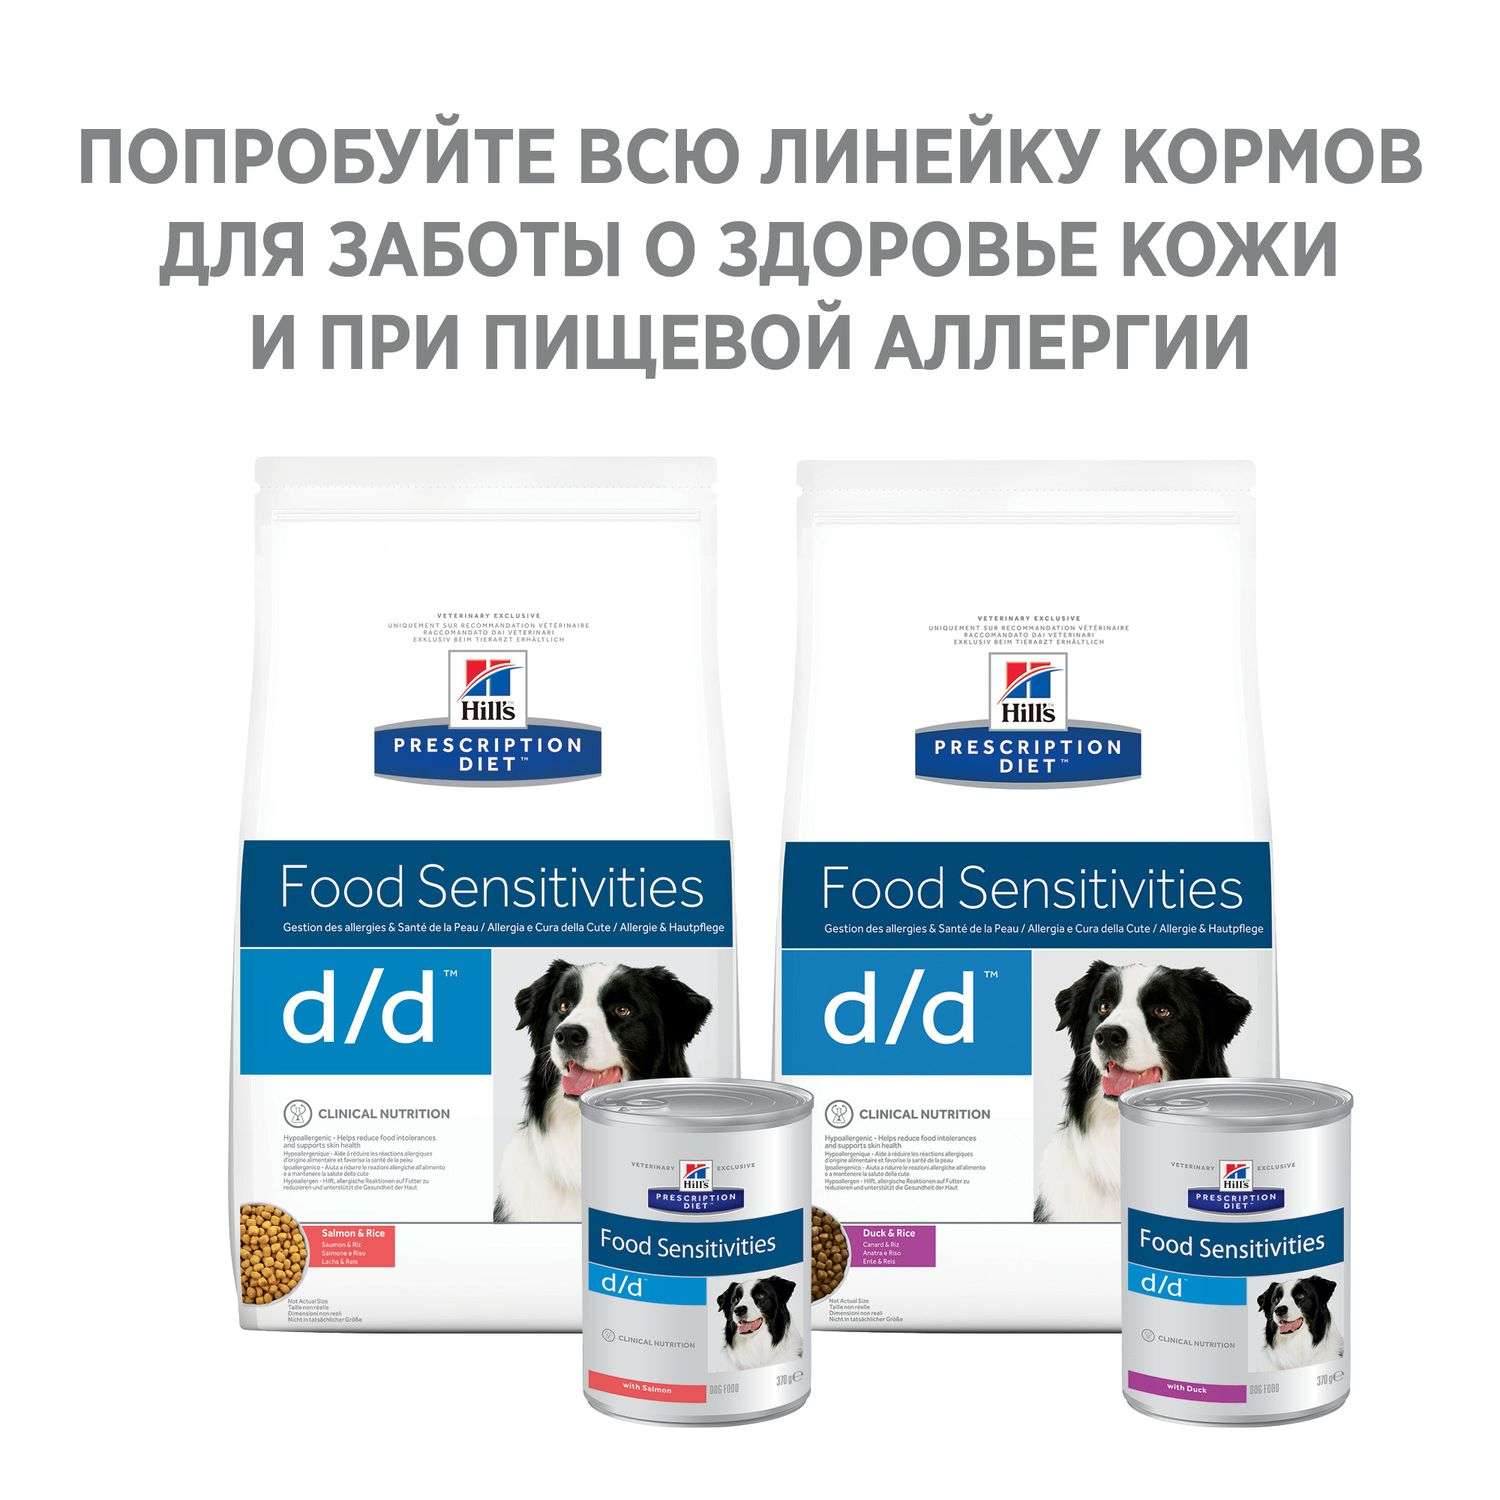 Корм для собак HILLS 12кг Prescription Diet d/d Food Sensitivities для кожи при аллергии и заболеваниях кожи утка с рисом сухой - фото 4